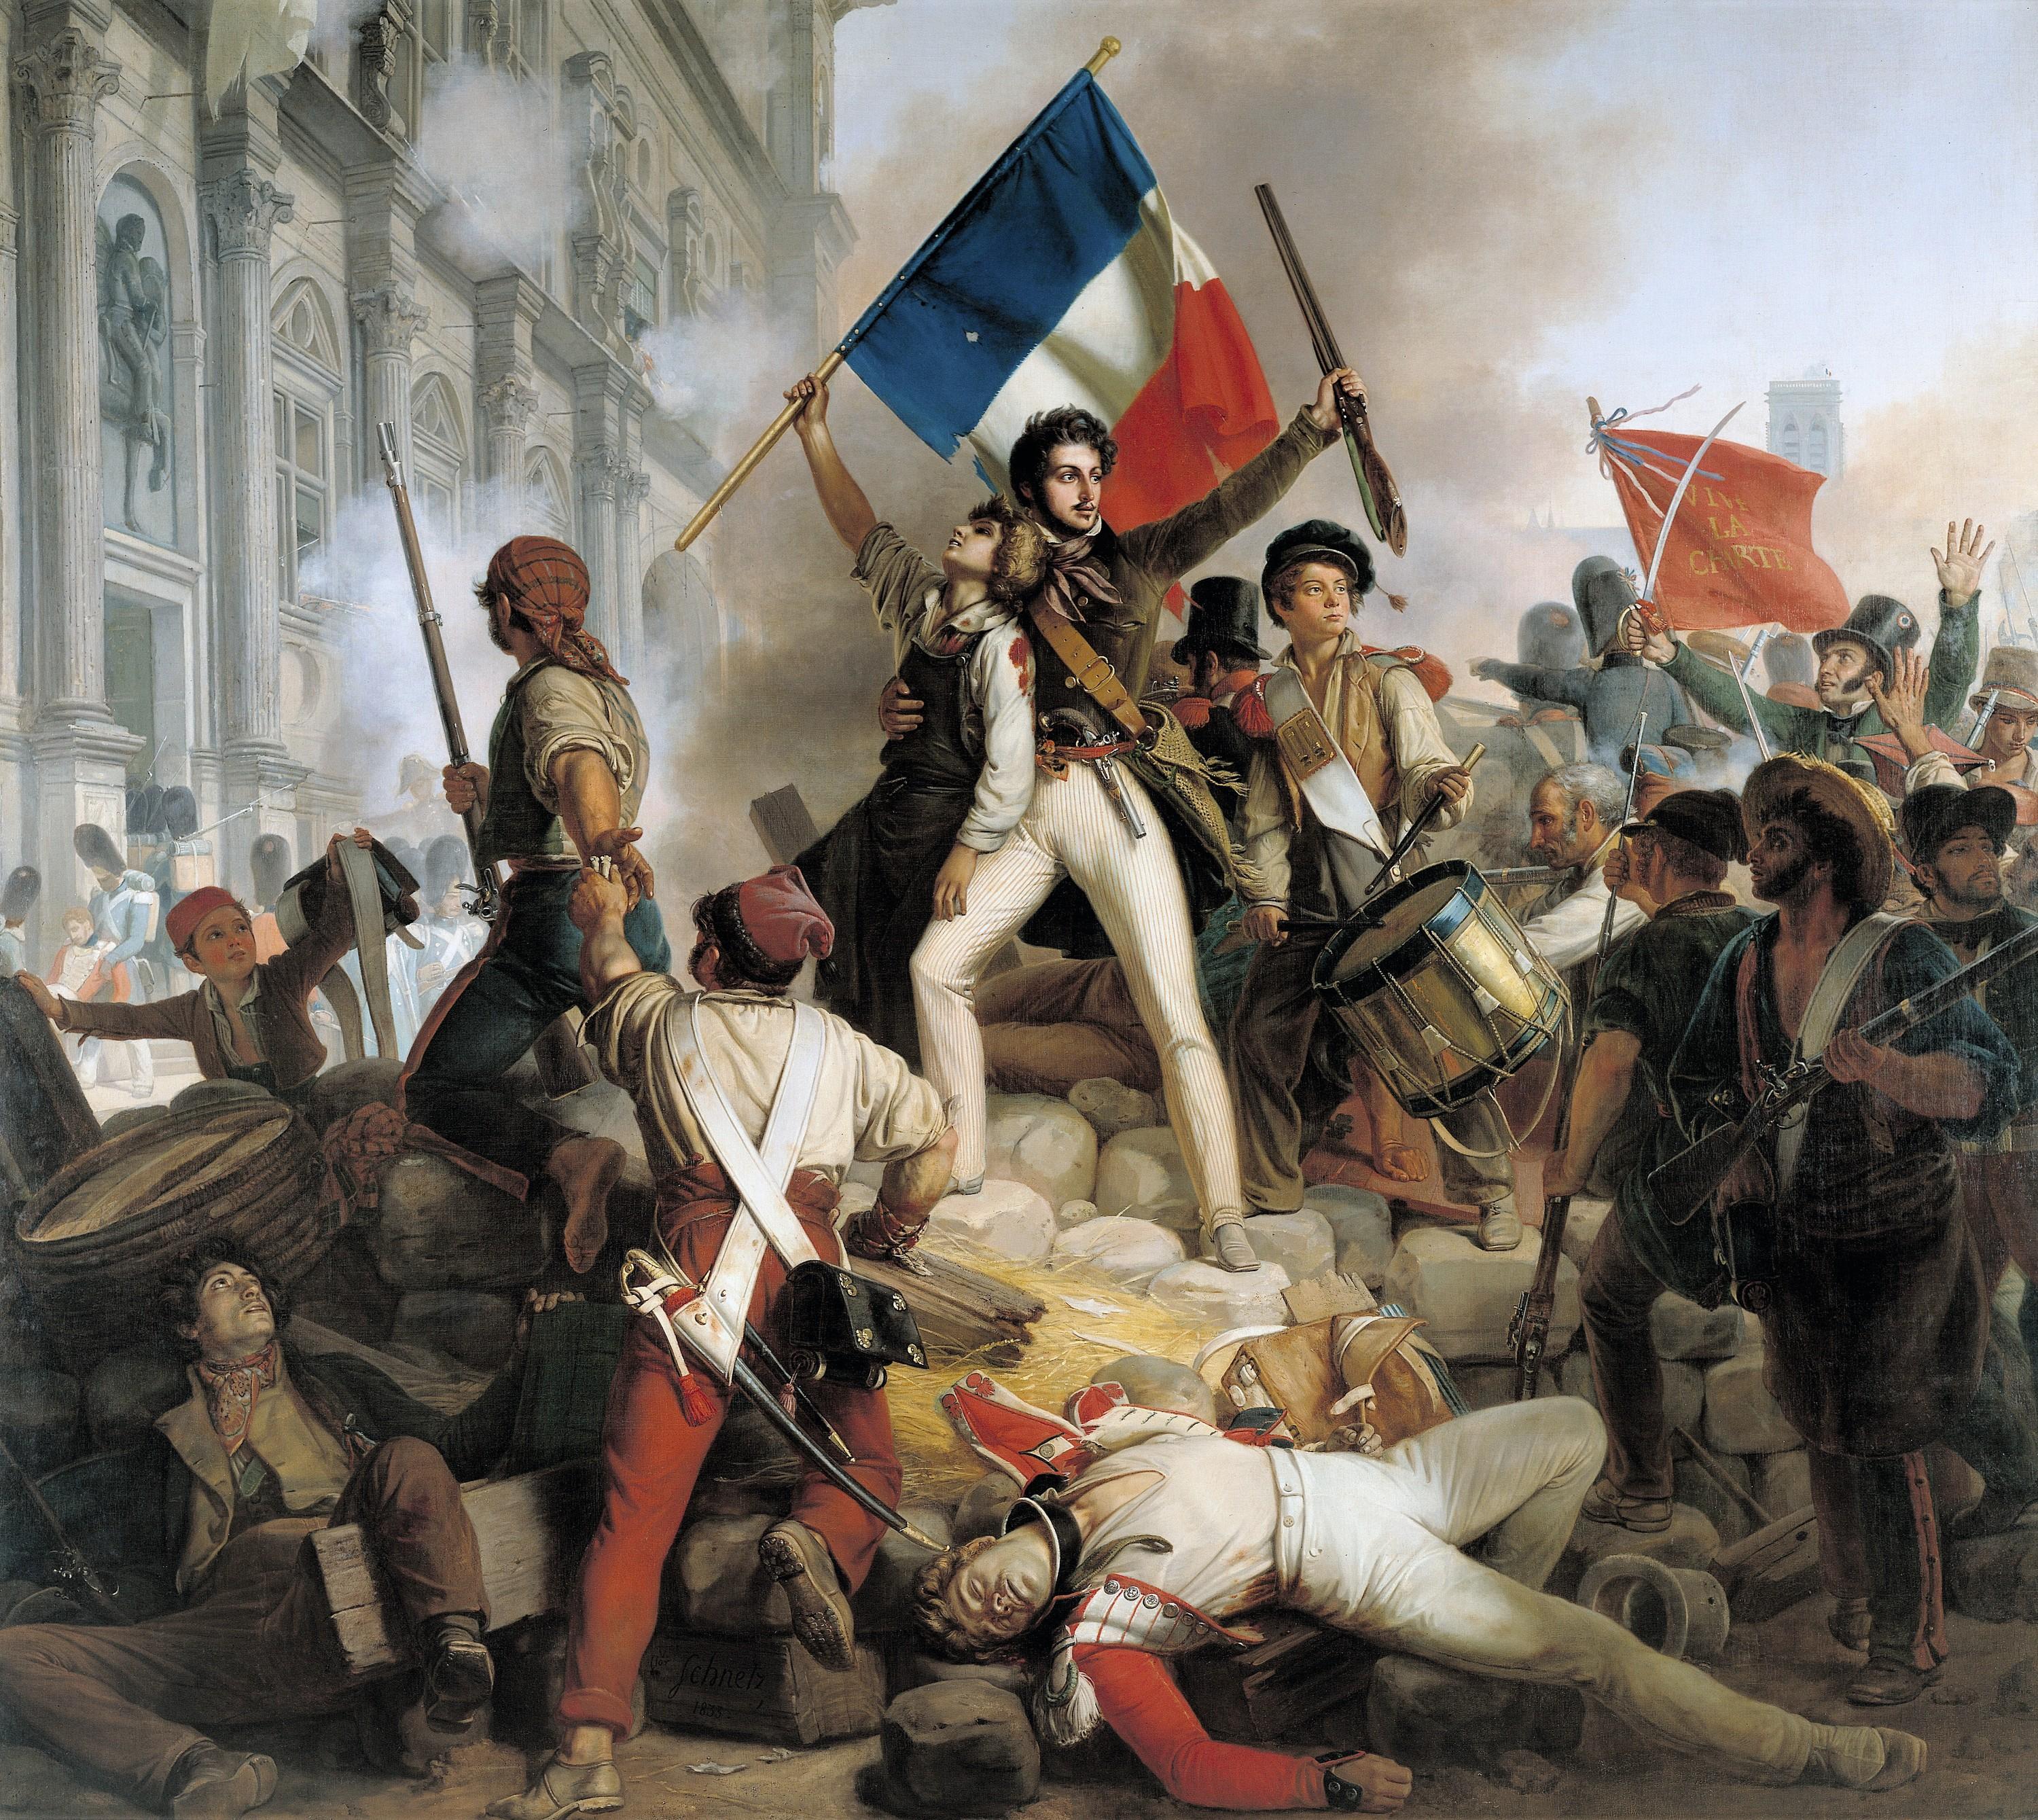 Jean-Victor Schnetz, Combats devant l’Hôtel de
Ville, 1833, huile sur toile (détail), 48 x 50 cm, musée du Petit Palais, Paris.